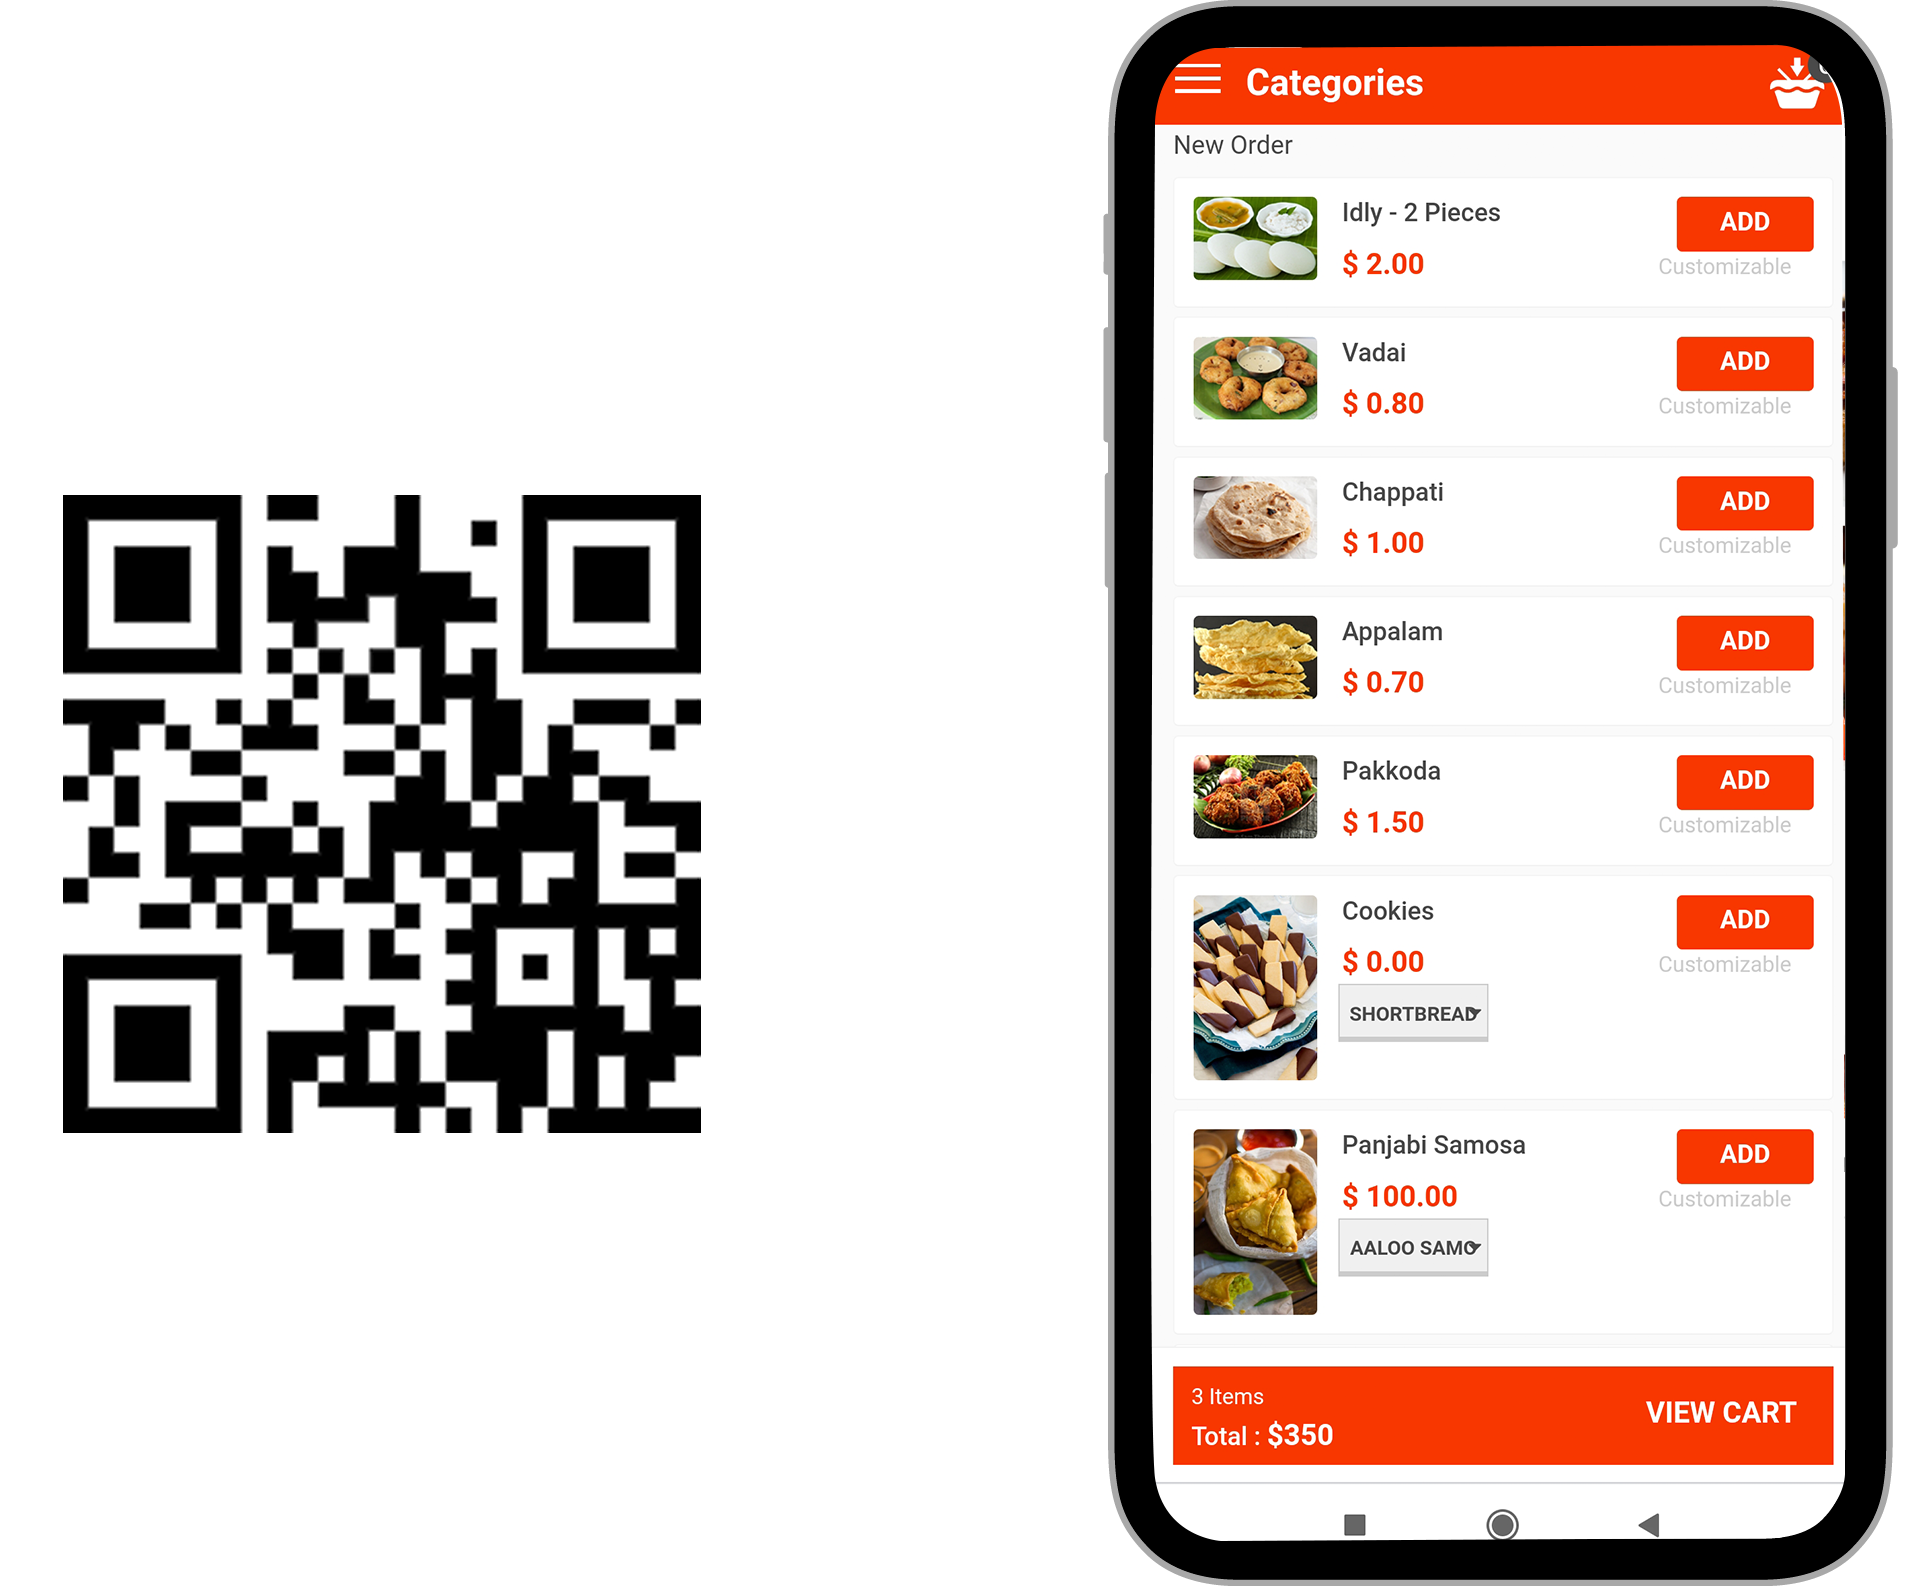 Digital menu QR code Ordering  Software App india Digital Menu